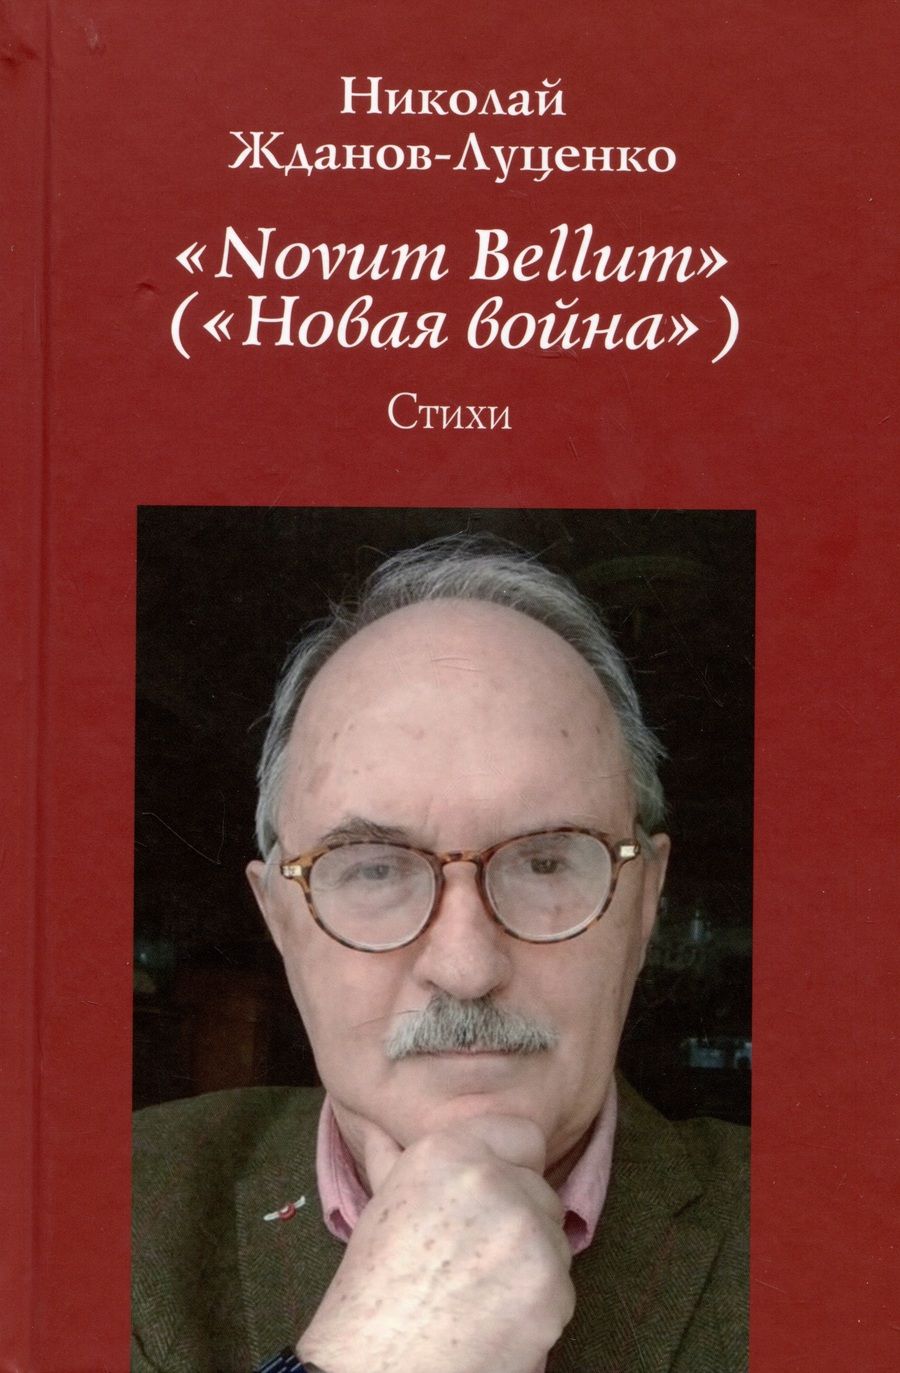 Обложка книги "Жданов-Луценко: "Novum Bellum" ("Новая война")"